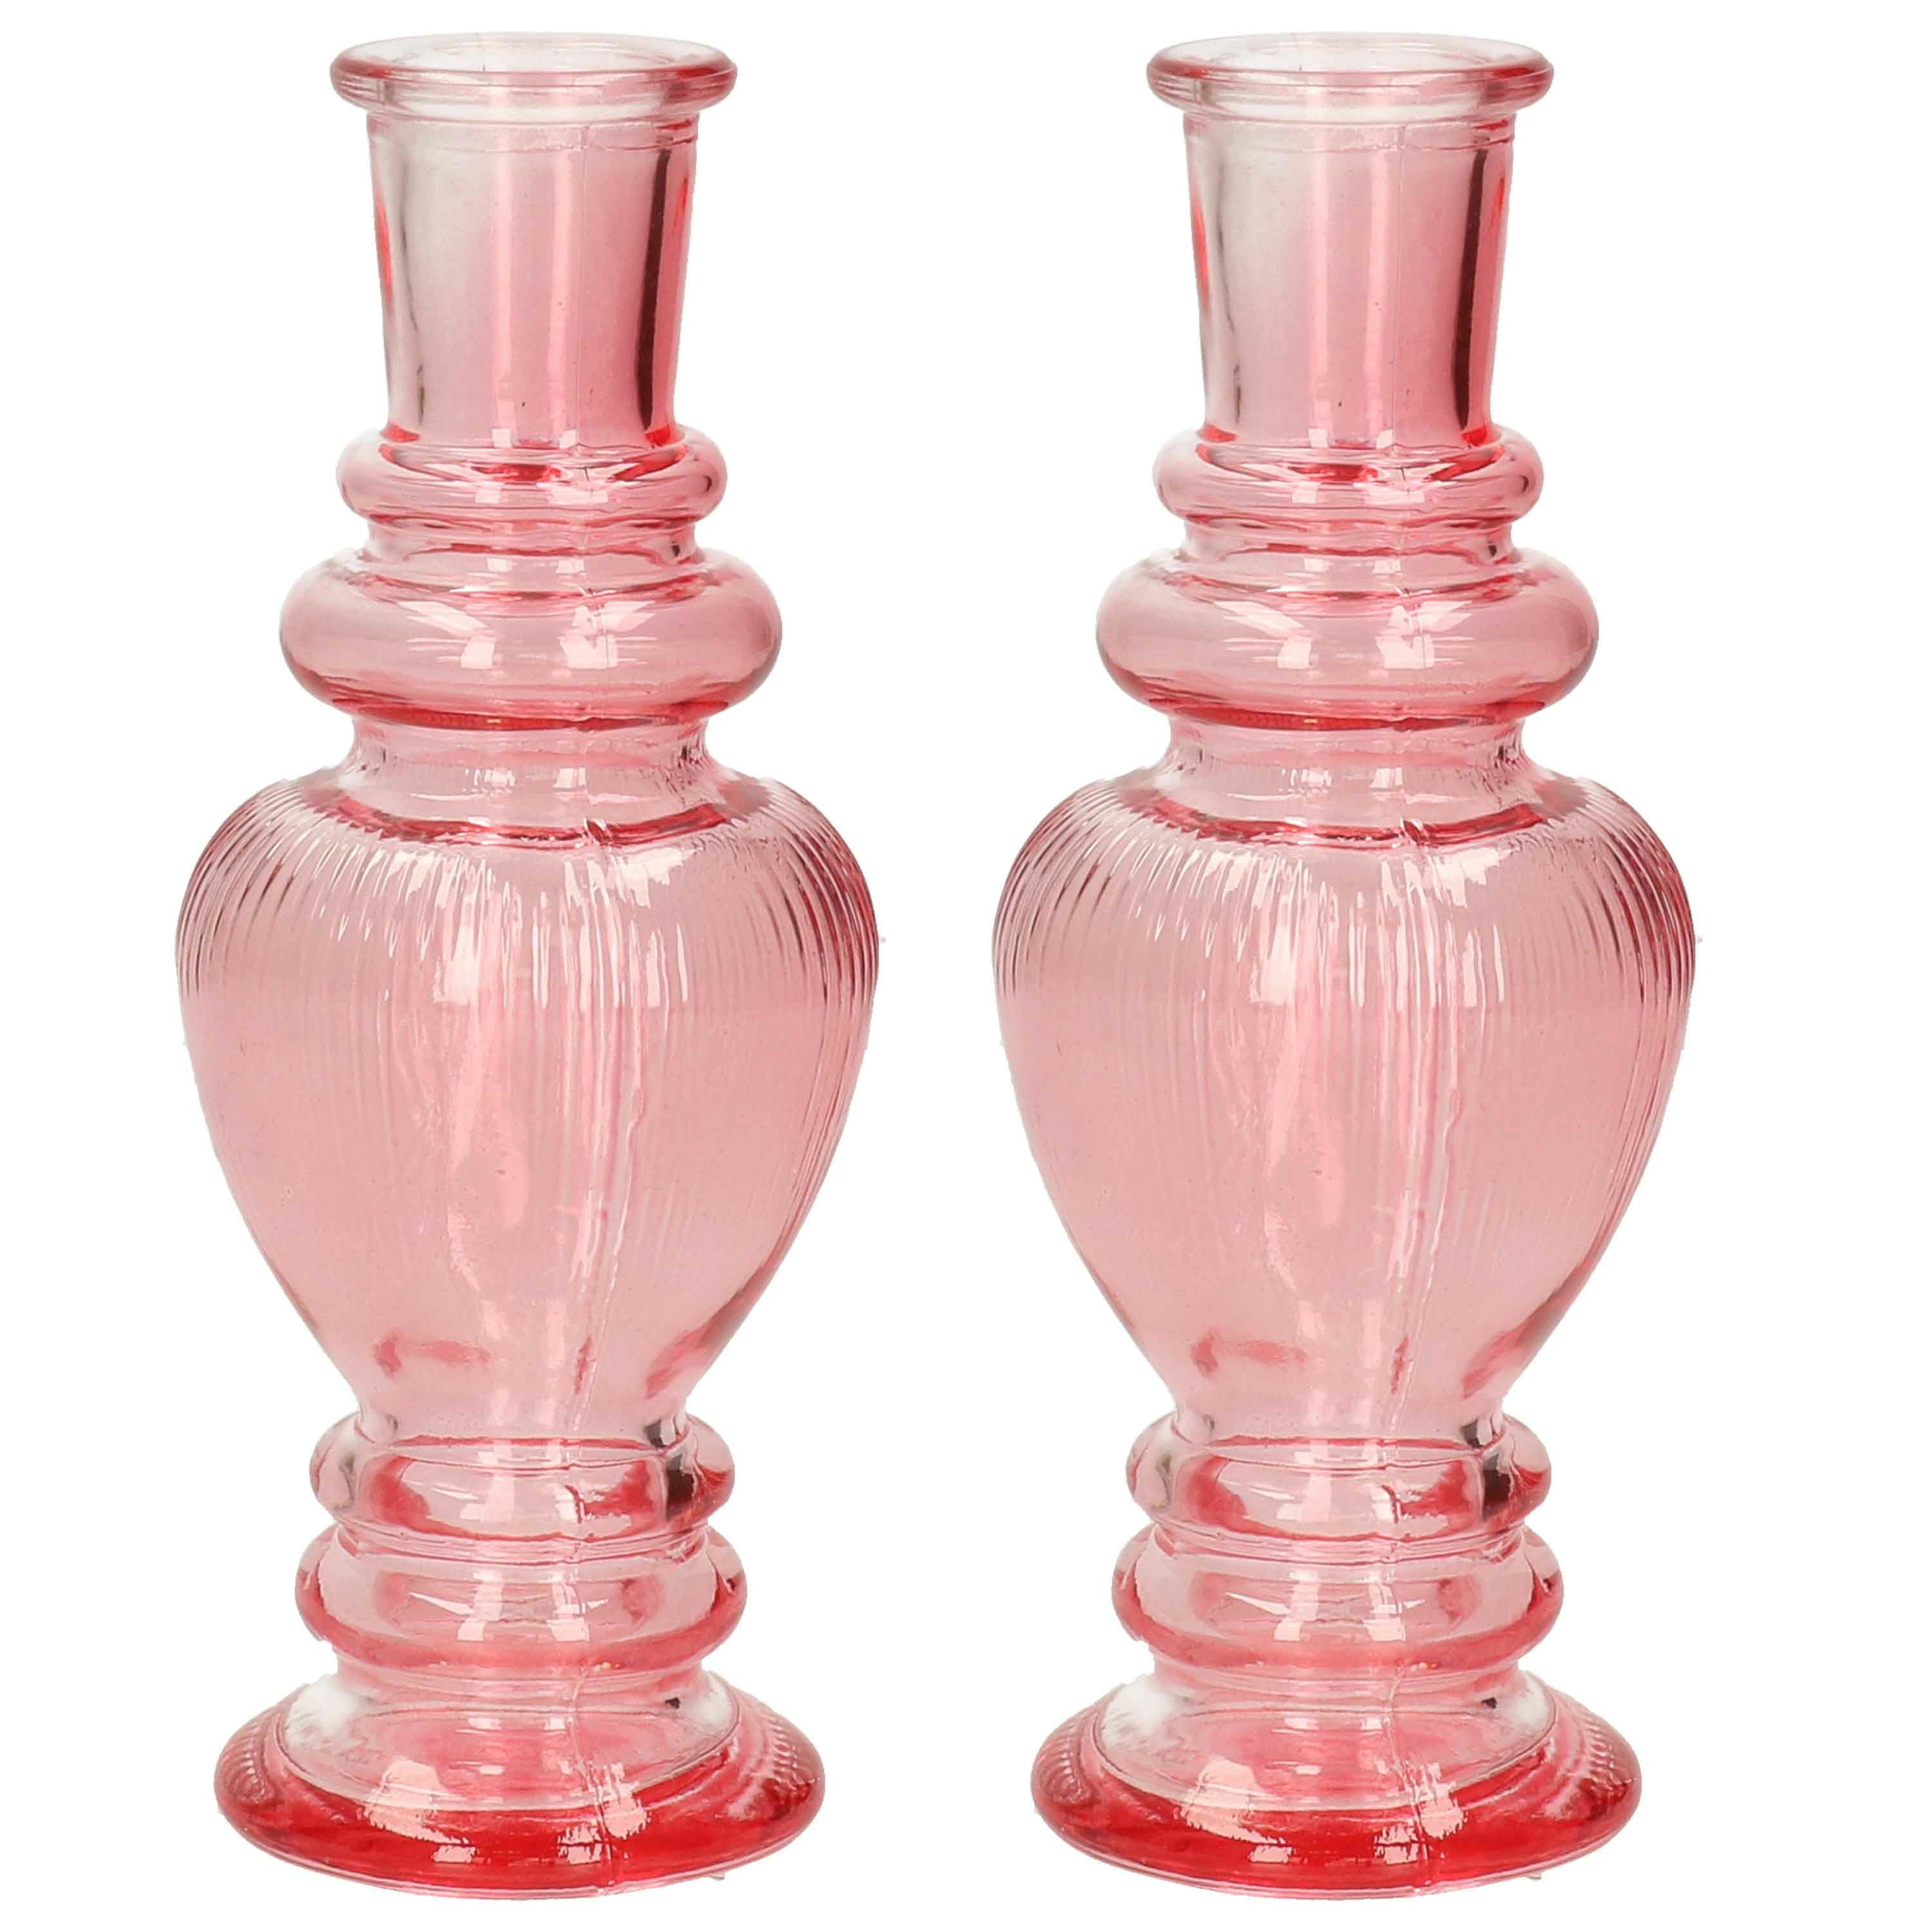 Kaarsen kandelaar Venice 2x gekleurd glas ribbel roze D5,7 x H15 cm